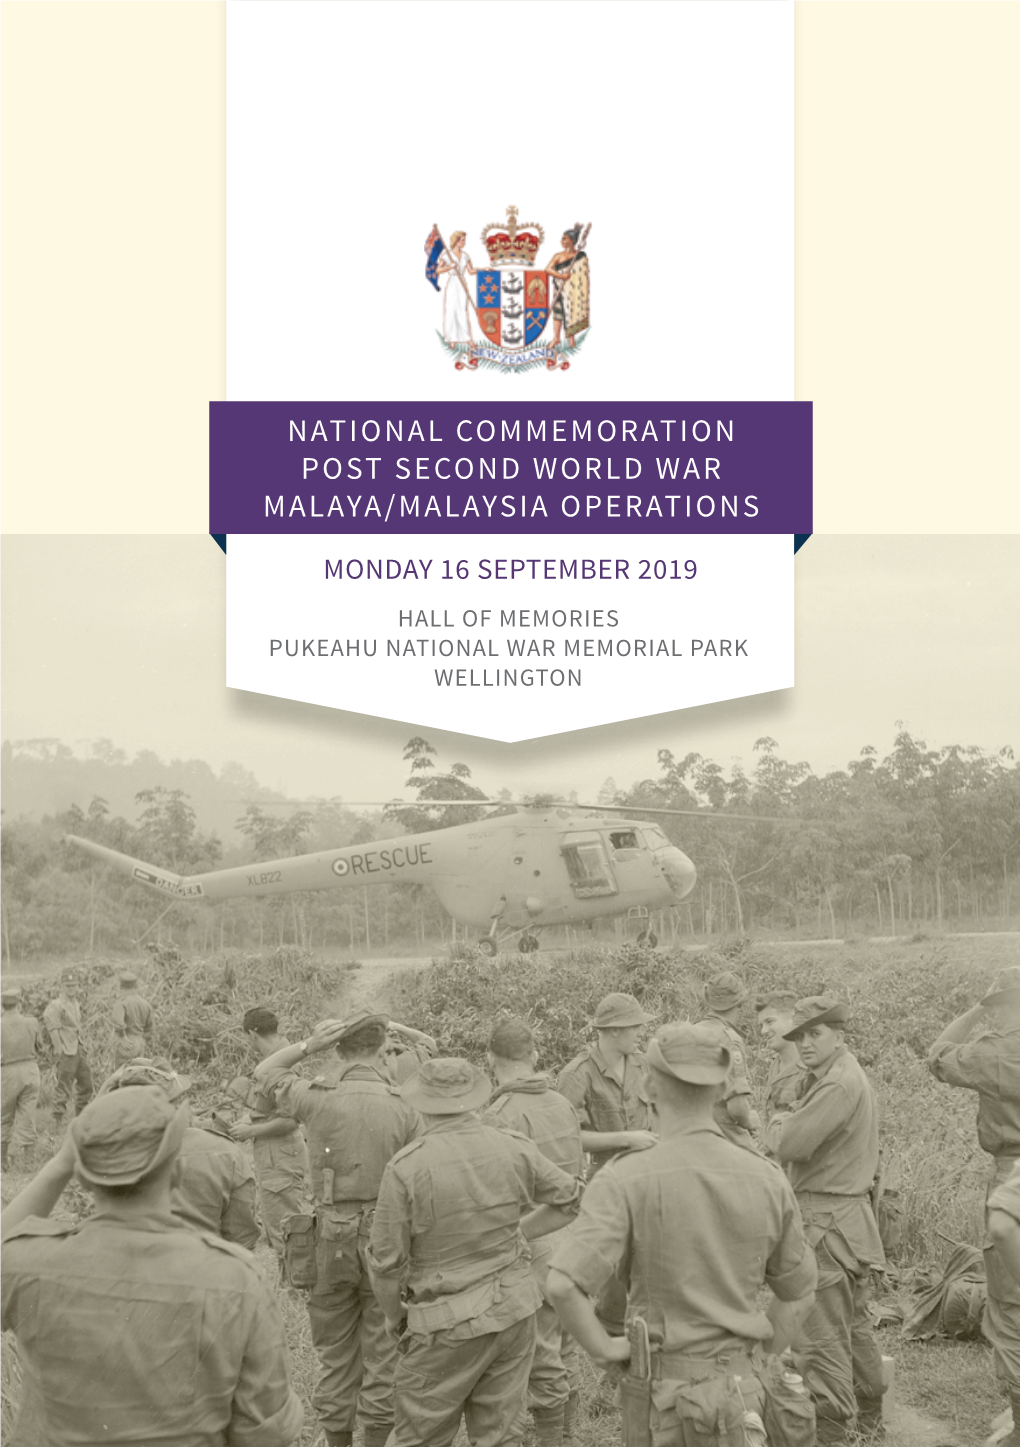 National Commemoration Post Second World War Malaya/Malaysia Operations